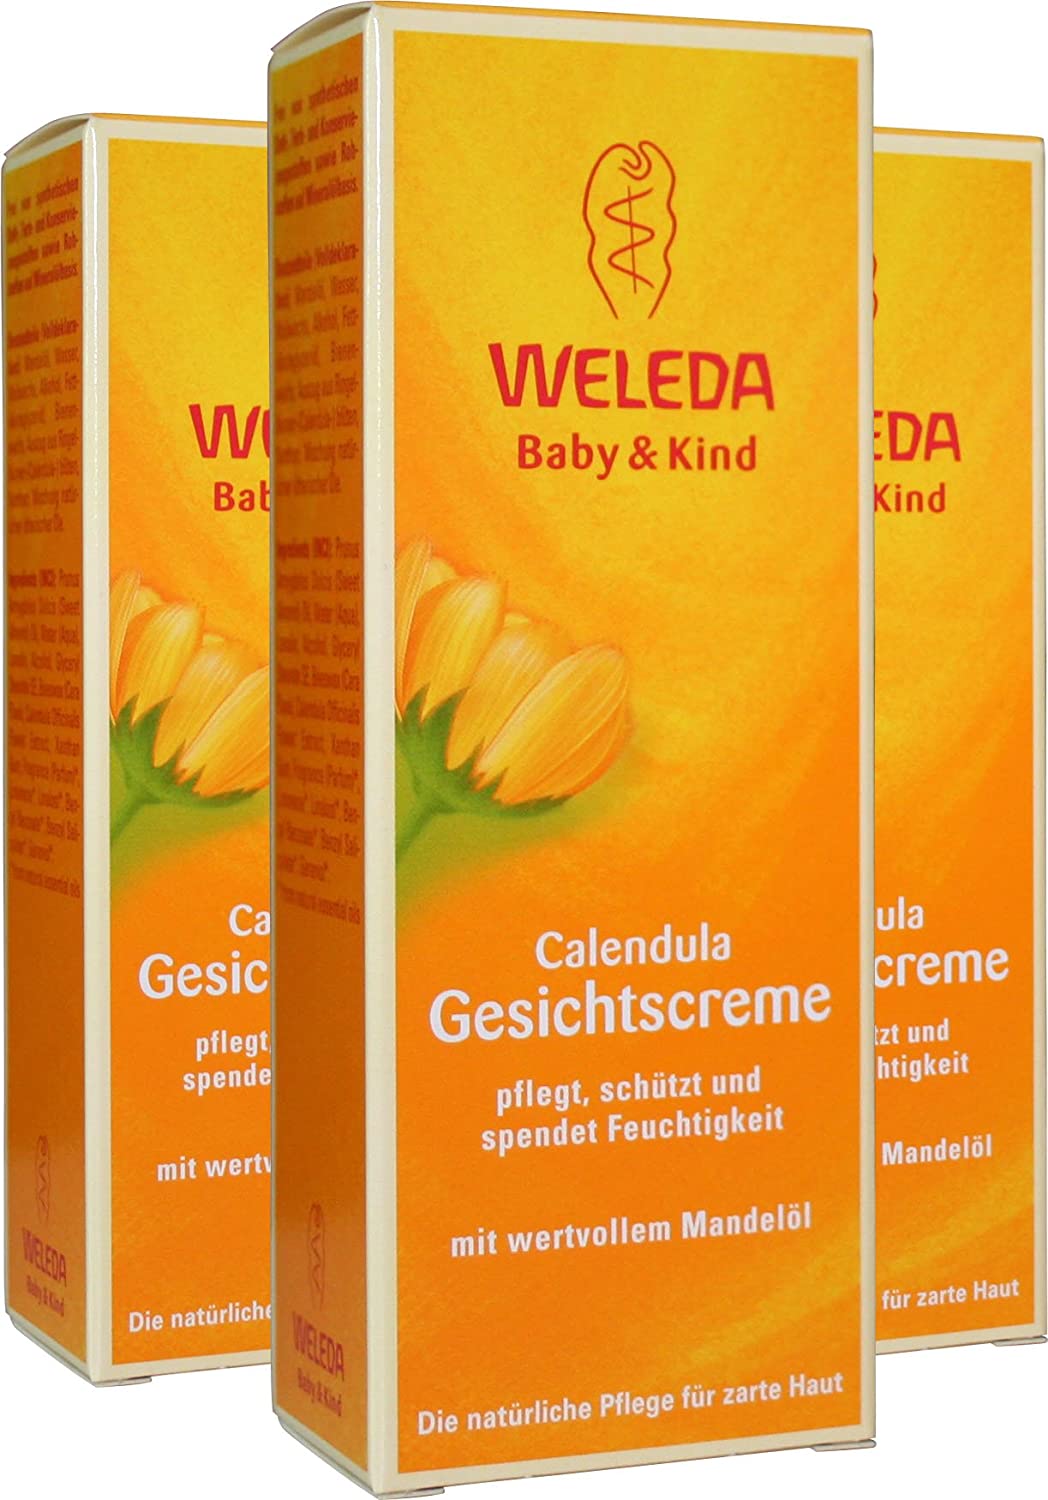 Weleda Calendula Face Cream Pack of 3 x 50 ml